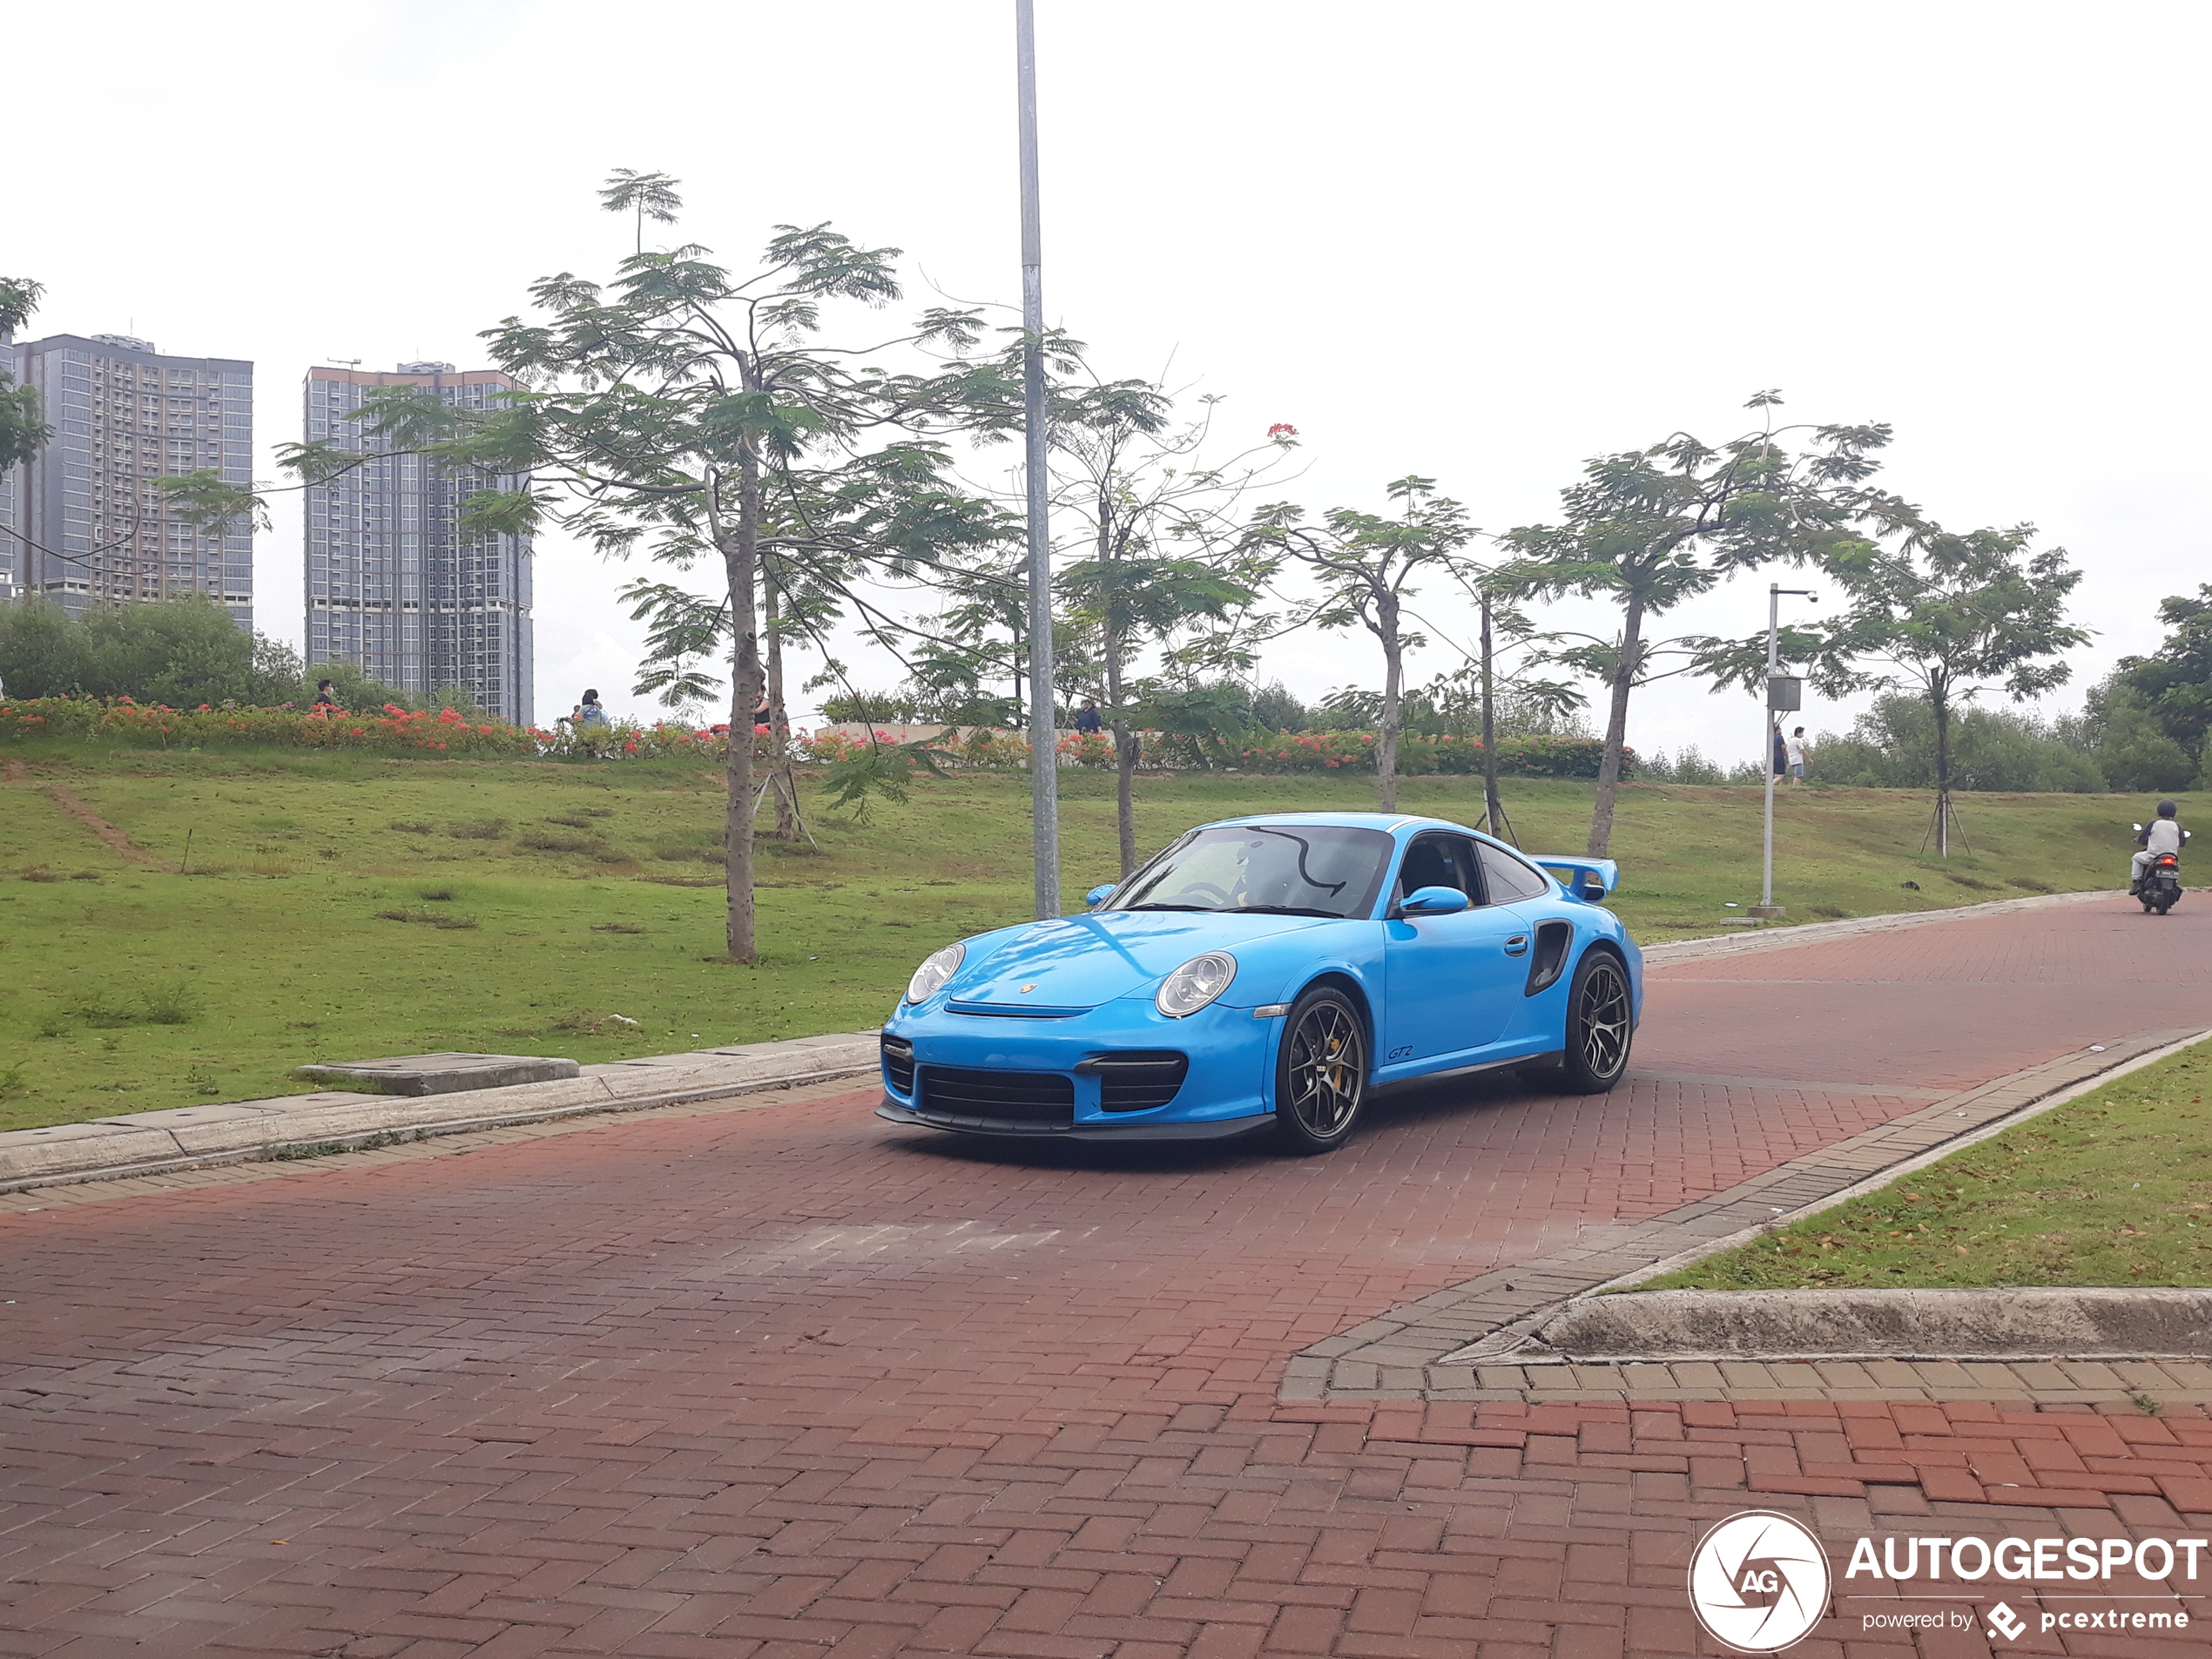 Porsche 997 GT2 in Indonesië is gaaf om te zien